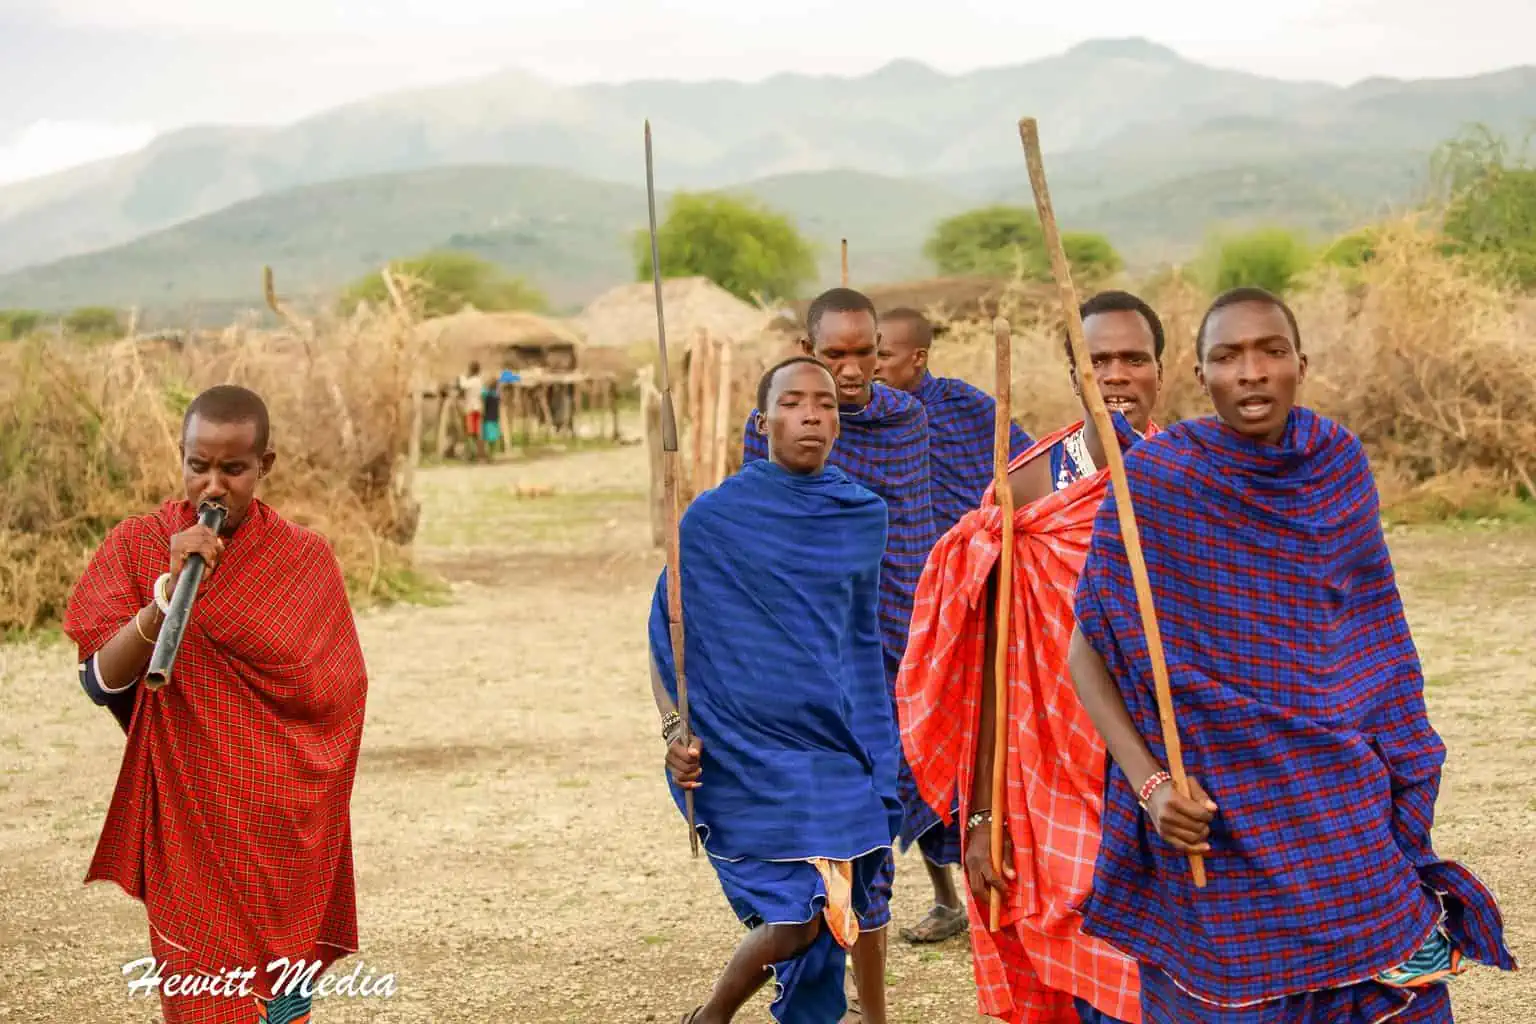 Traditional Maasai dance in village in Tanzania